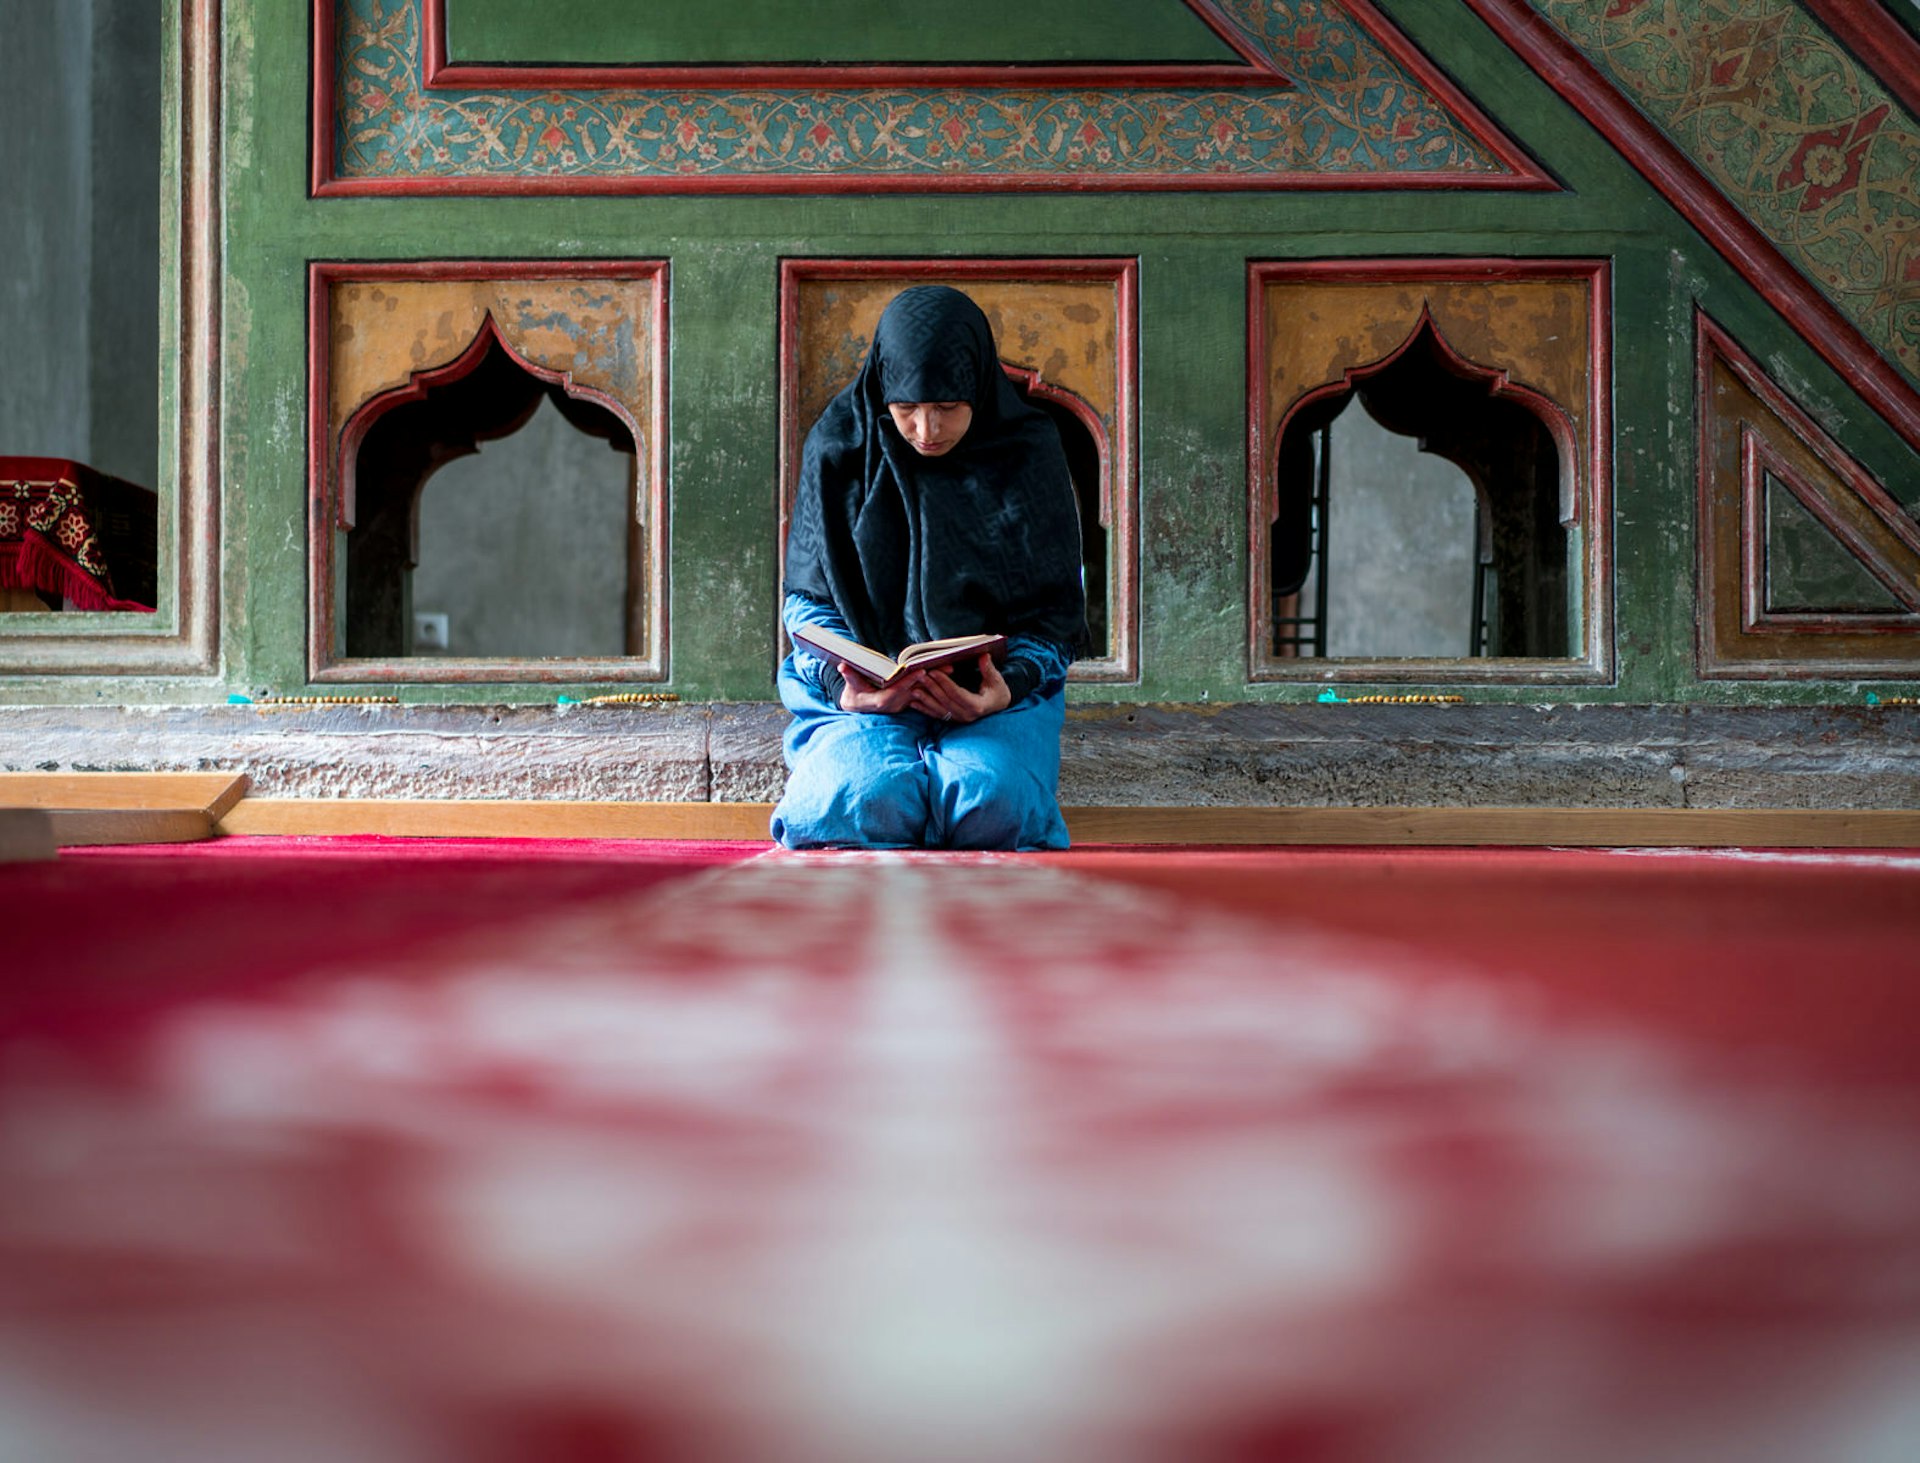 A woman prays inside a mosque